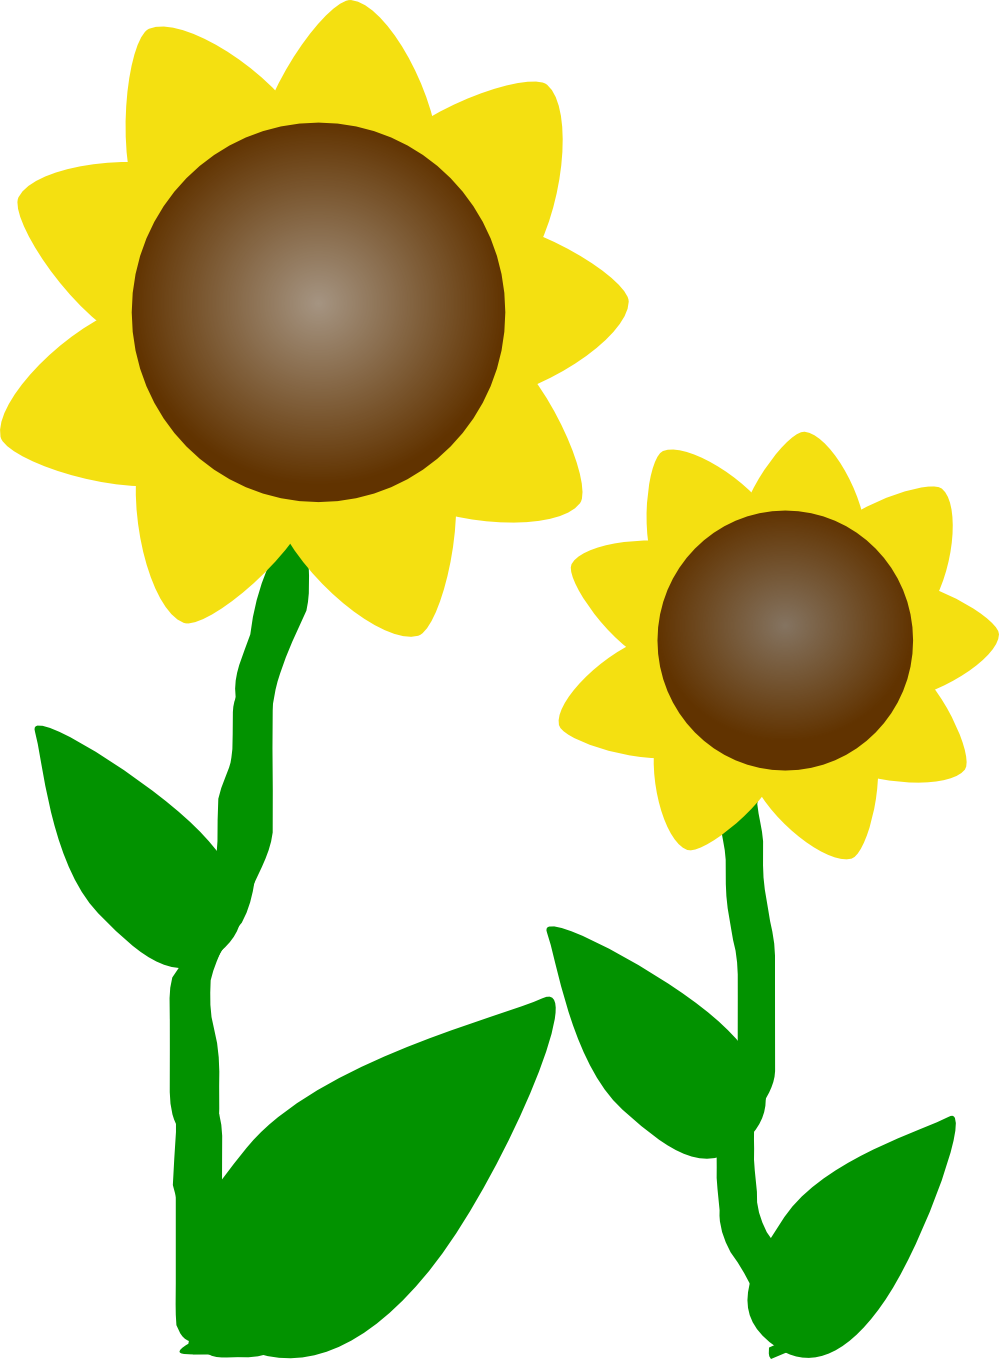 Xochi Sunflower xochi.info twee Flowers xochi.